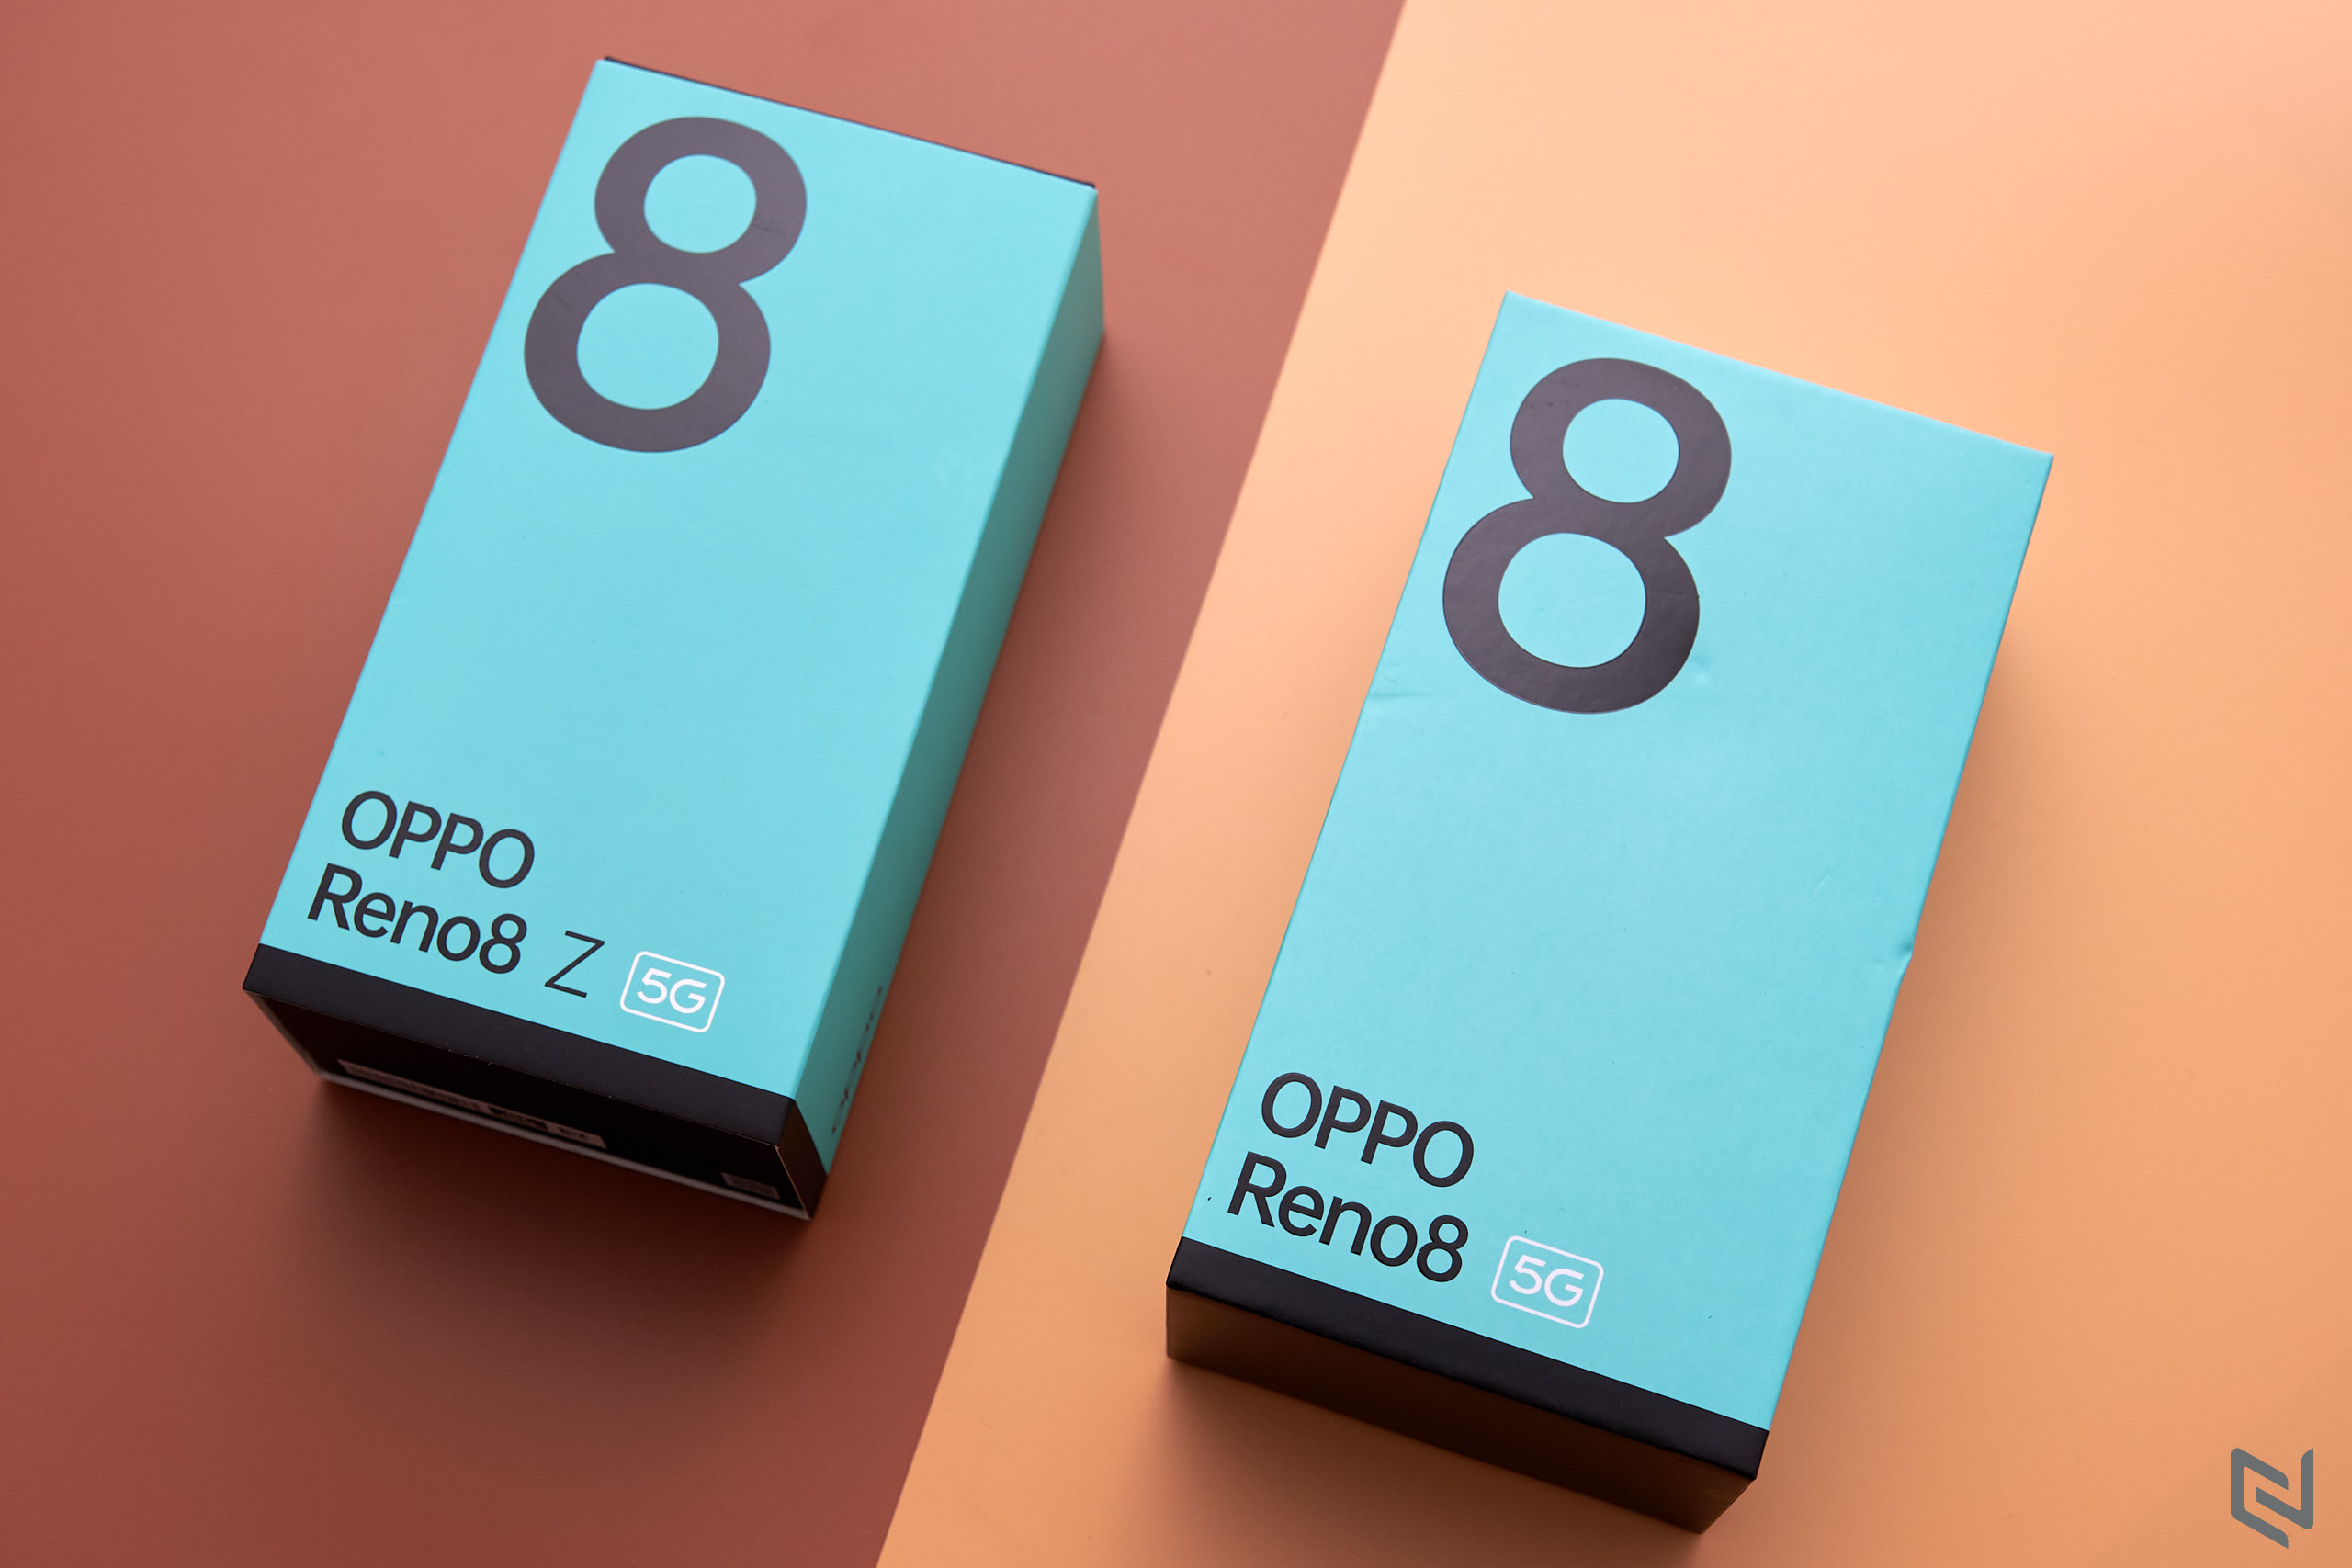 Mở hộp Reno8 Series - Thiết kế mới cùng hàng loạt tính năng thời thượng giúp OPPO ghi điểm tuyệt đối với người dùng trẻ